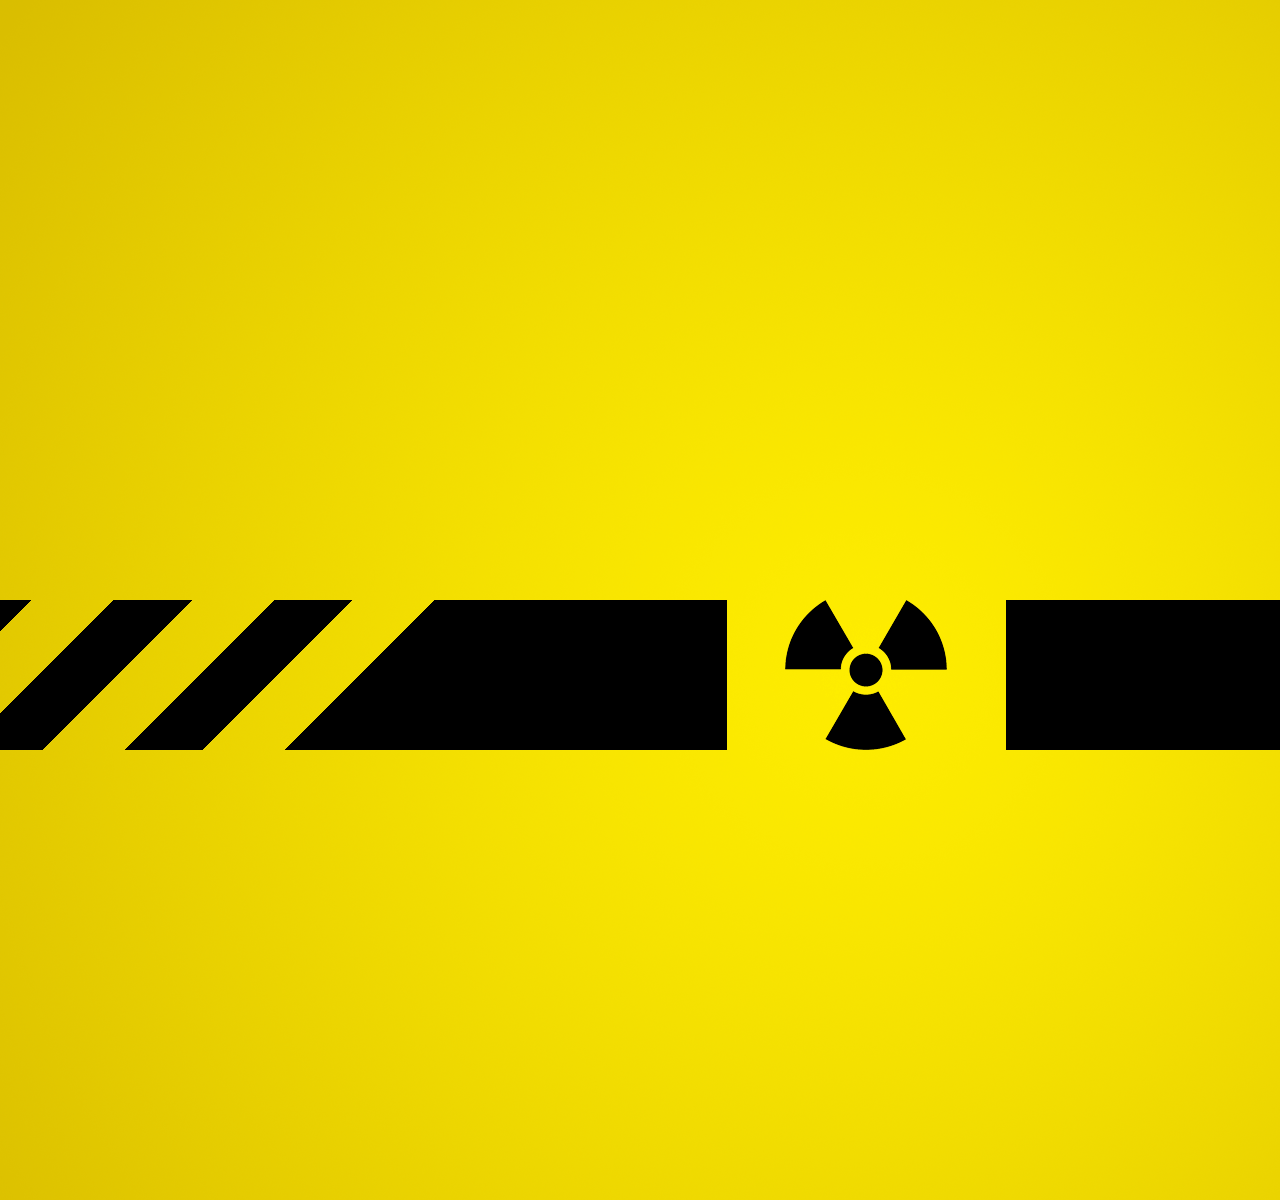 Cool Radioactive Logo - Cool Black And Yellow Radioactive Logo Wallpaper